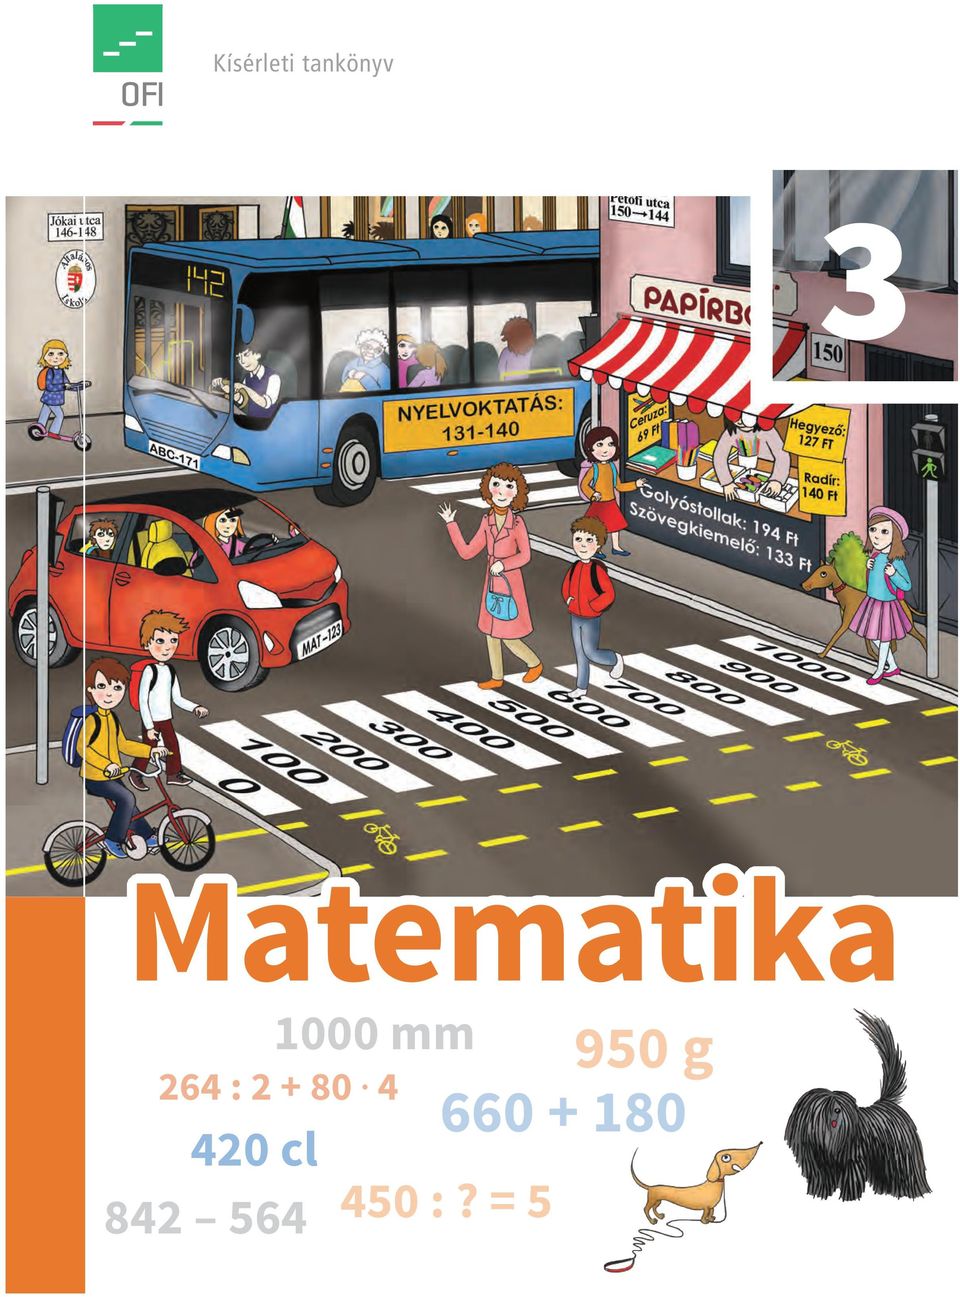 Kísérleti tankönyv. Matematika mm. 950 g : cl :? = 5 - PDF Ingyenes letöltés